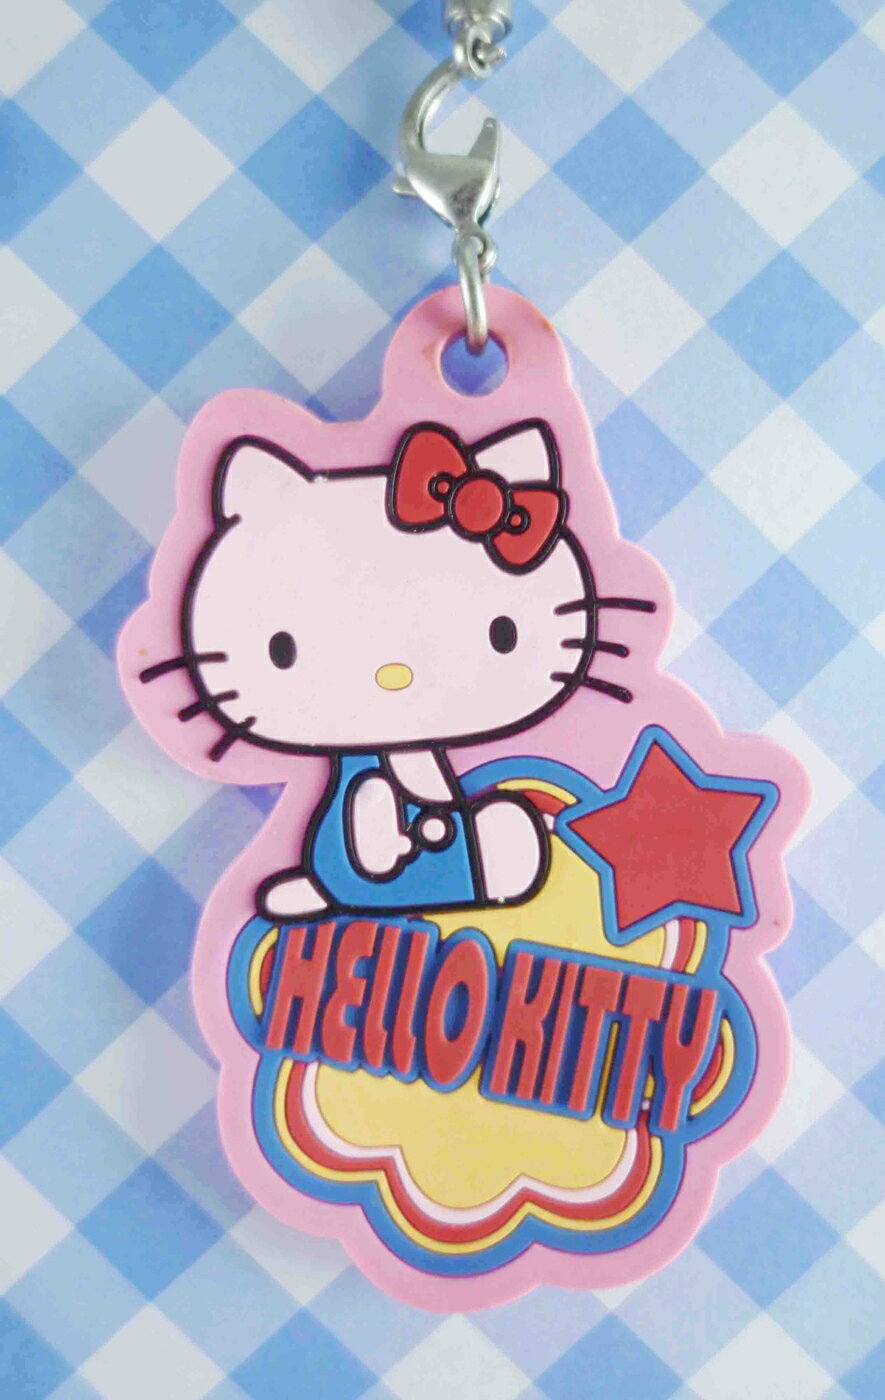 【震撼精品百貨】Hello Kitty 凱蒂貓 矽膠手機吊飾-LOGO粉 震撼日式精品百貨